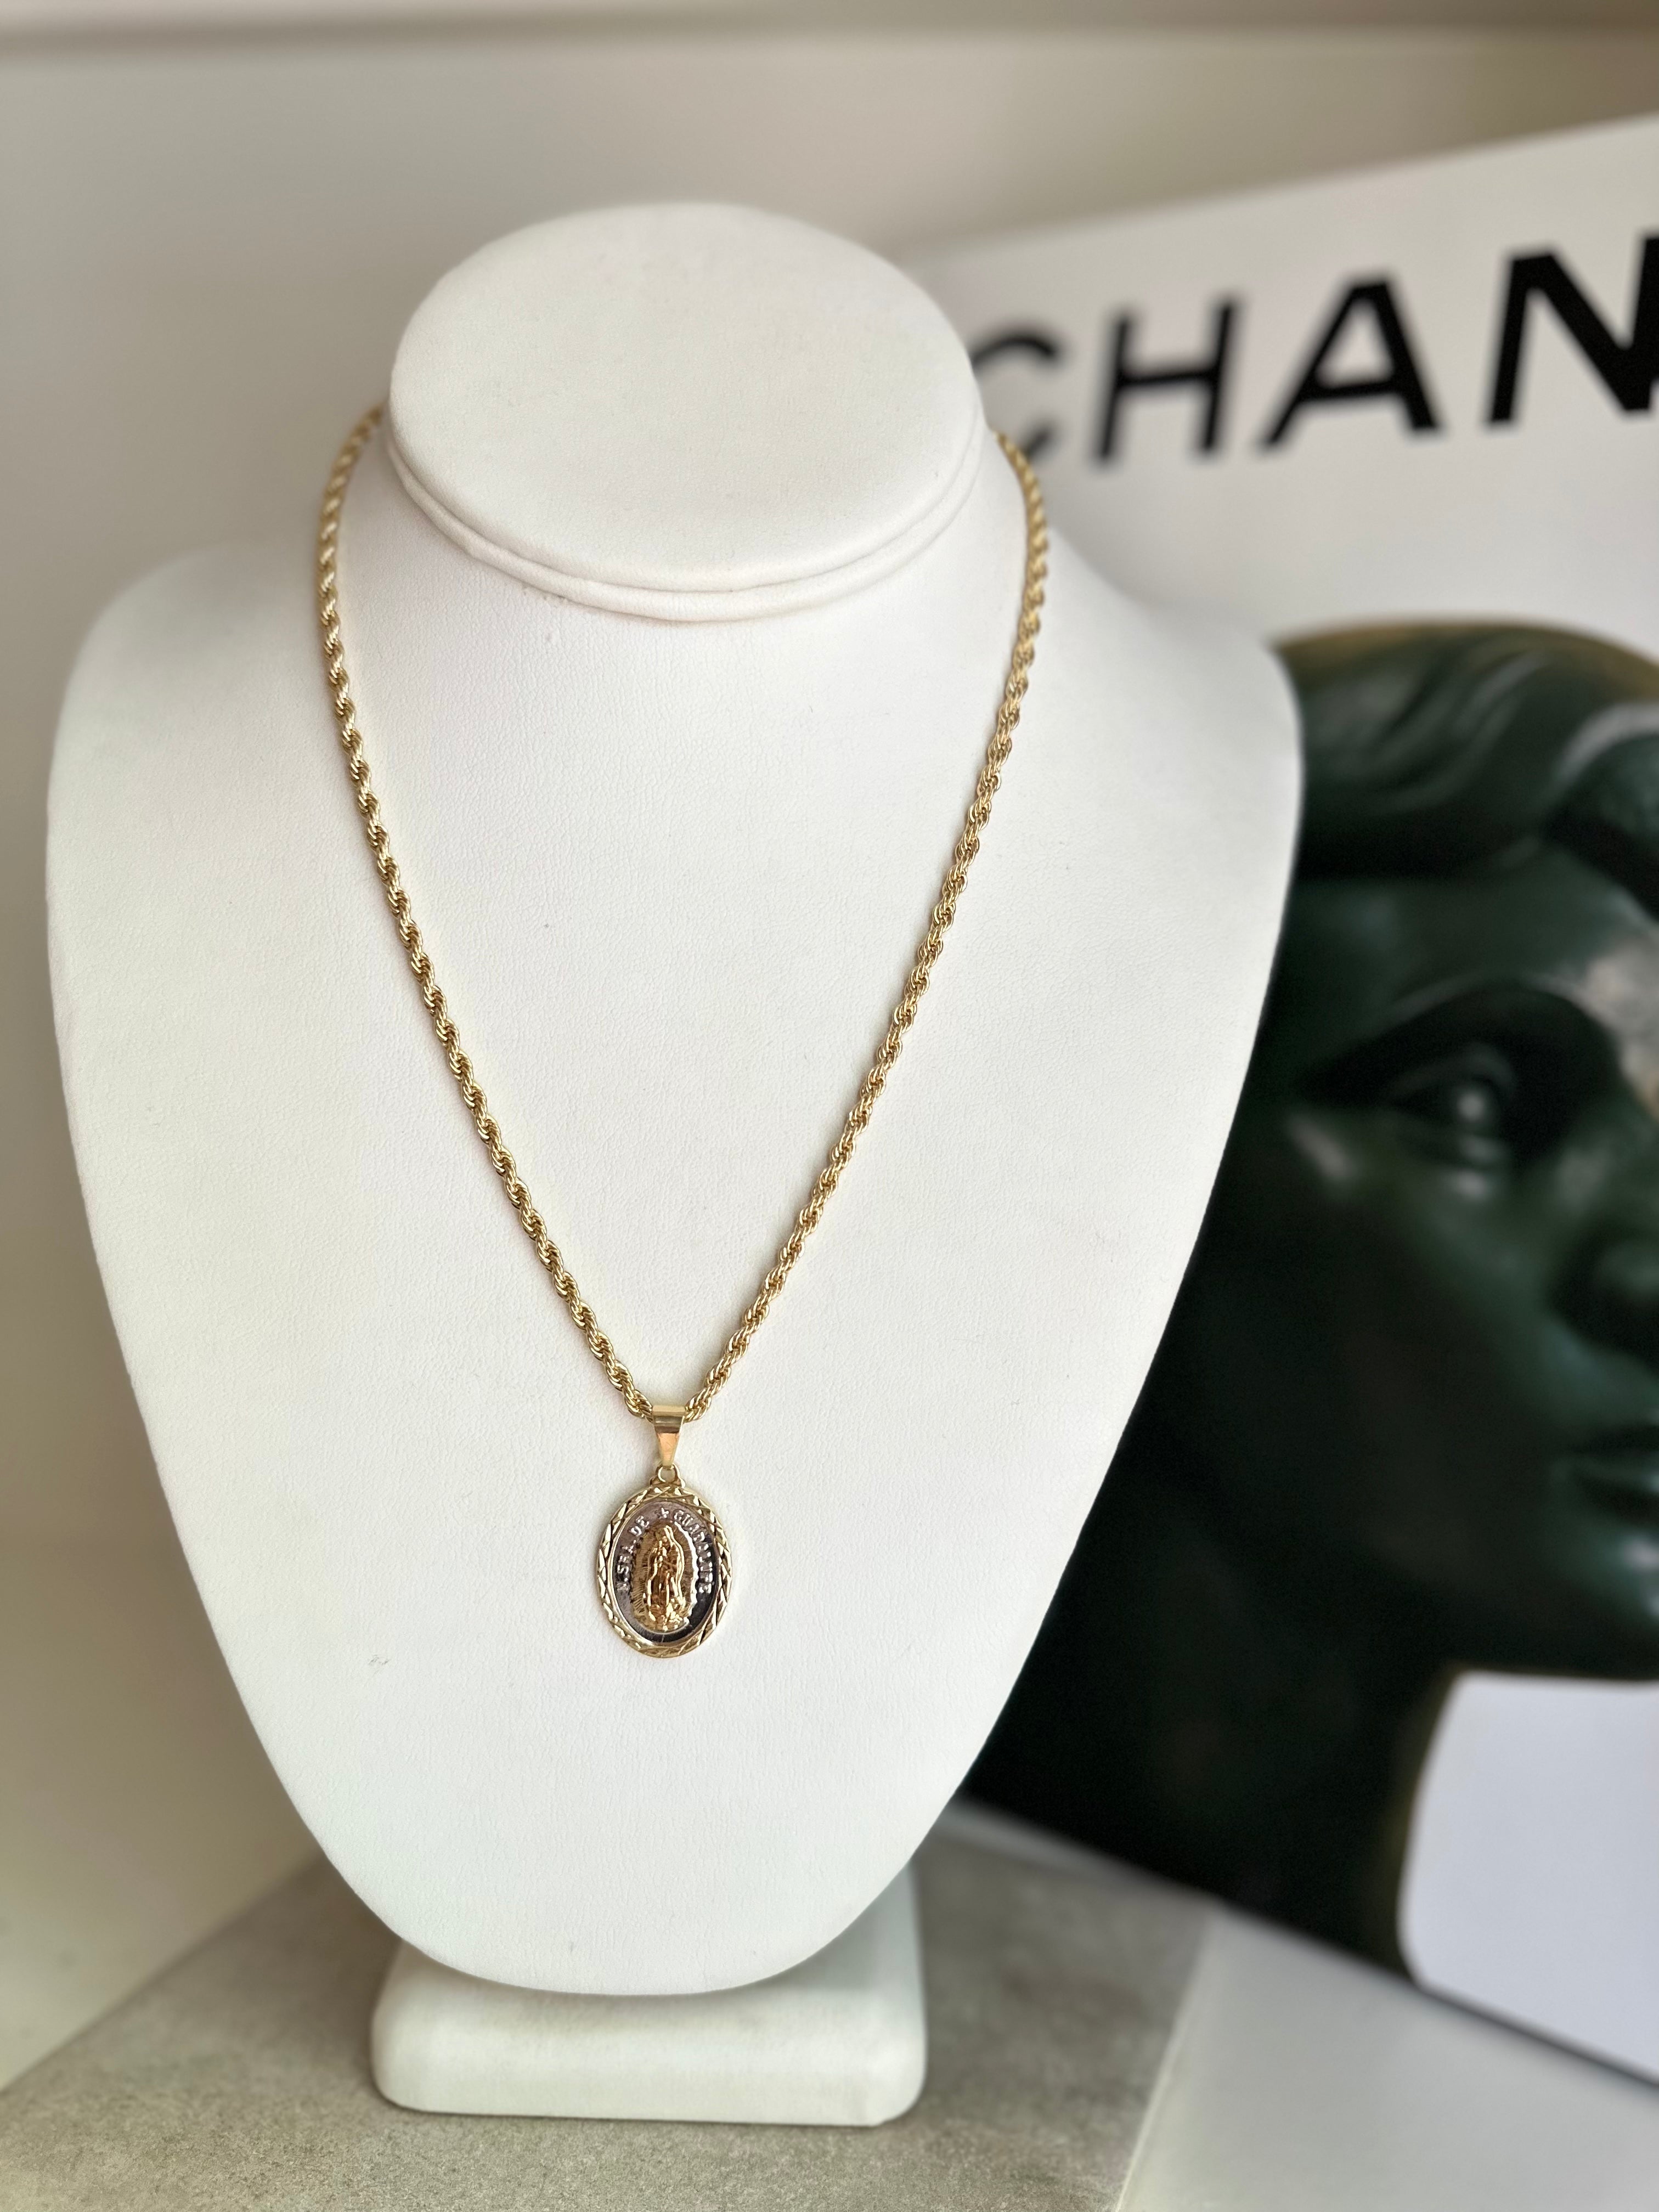 Isabella 18K Gold Filled Necklace